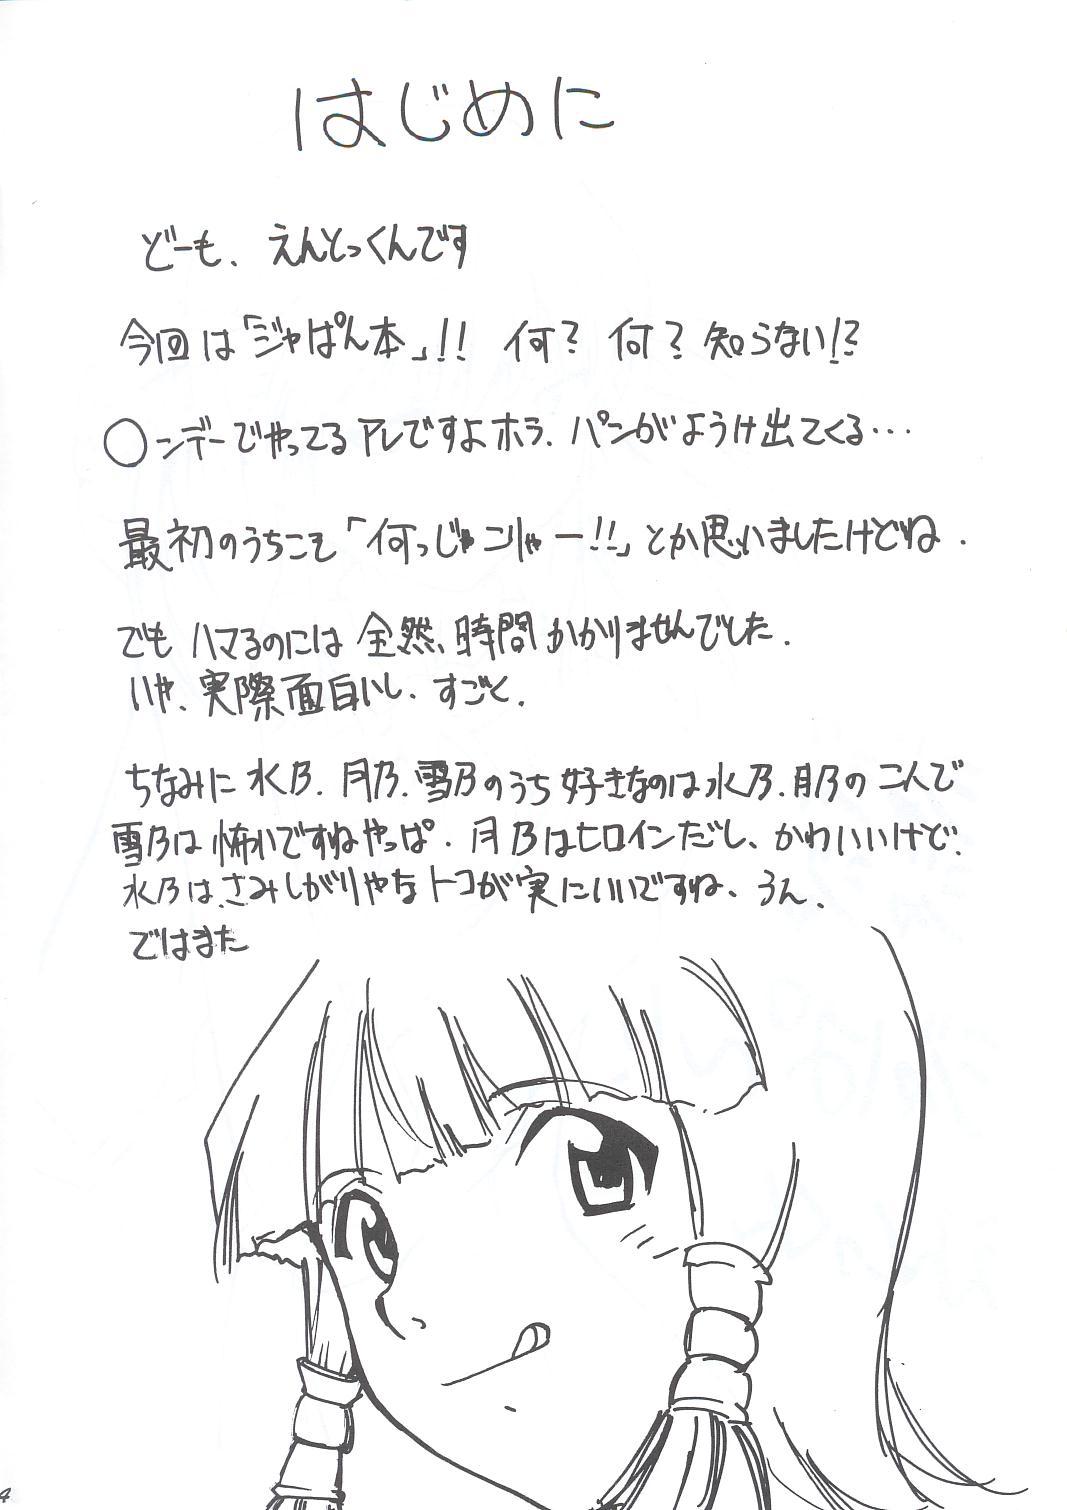 Famosa Ja Ja Ja Ja Japan 1 - Yakitate japan Grosso - Page 3